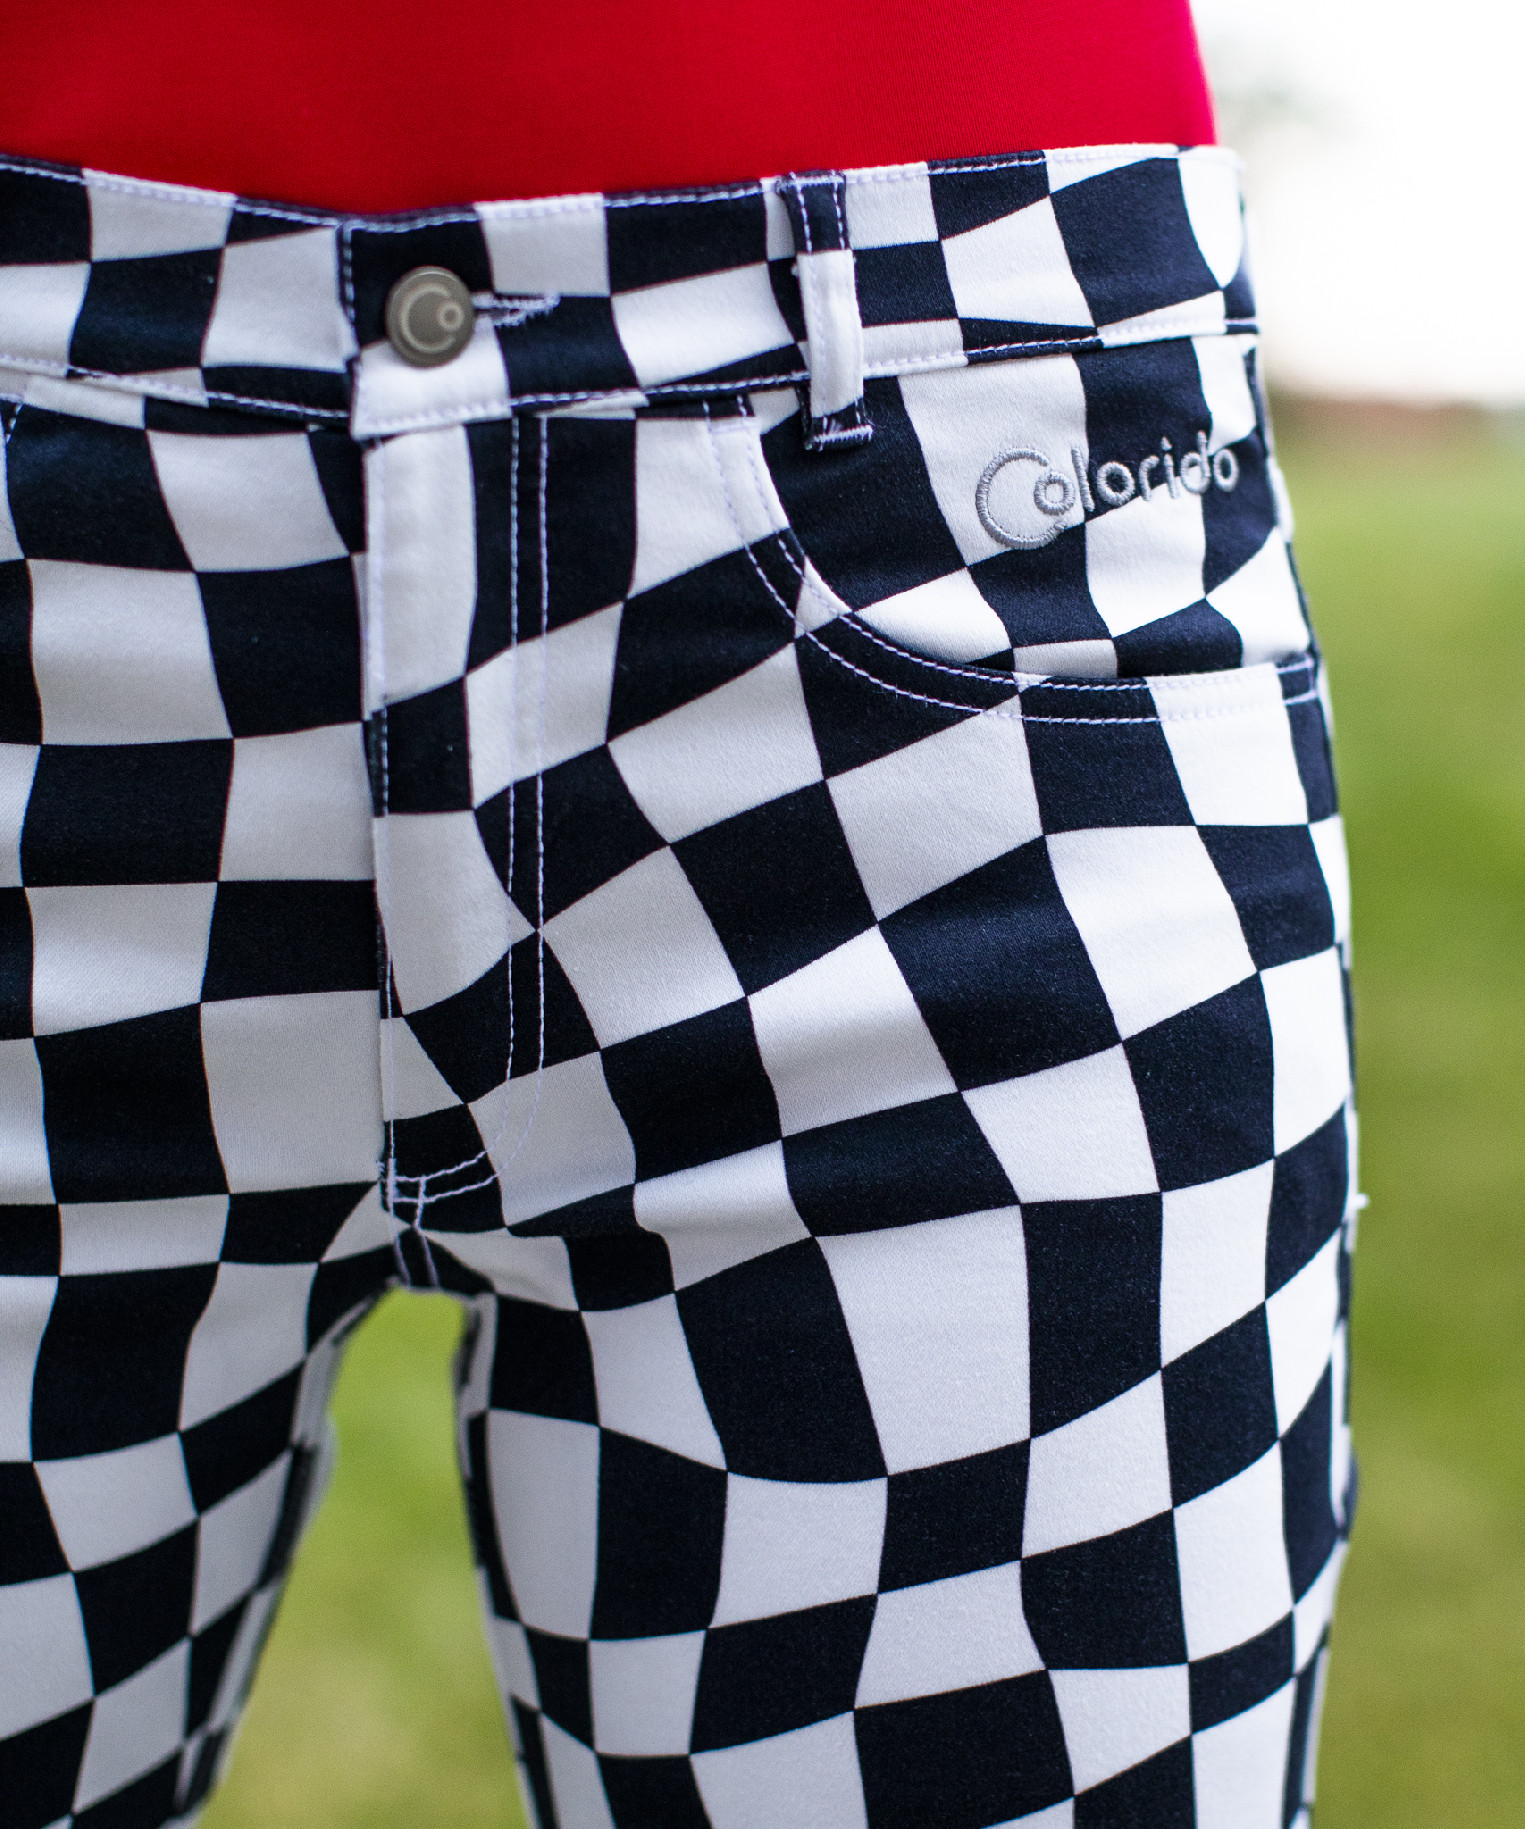 Dámské černobílé golfové kalhoty Colorido Velikost: S, Délka nohavic: KLASICKÁ, Barva: ČERNÁ-BÍLÁ